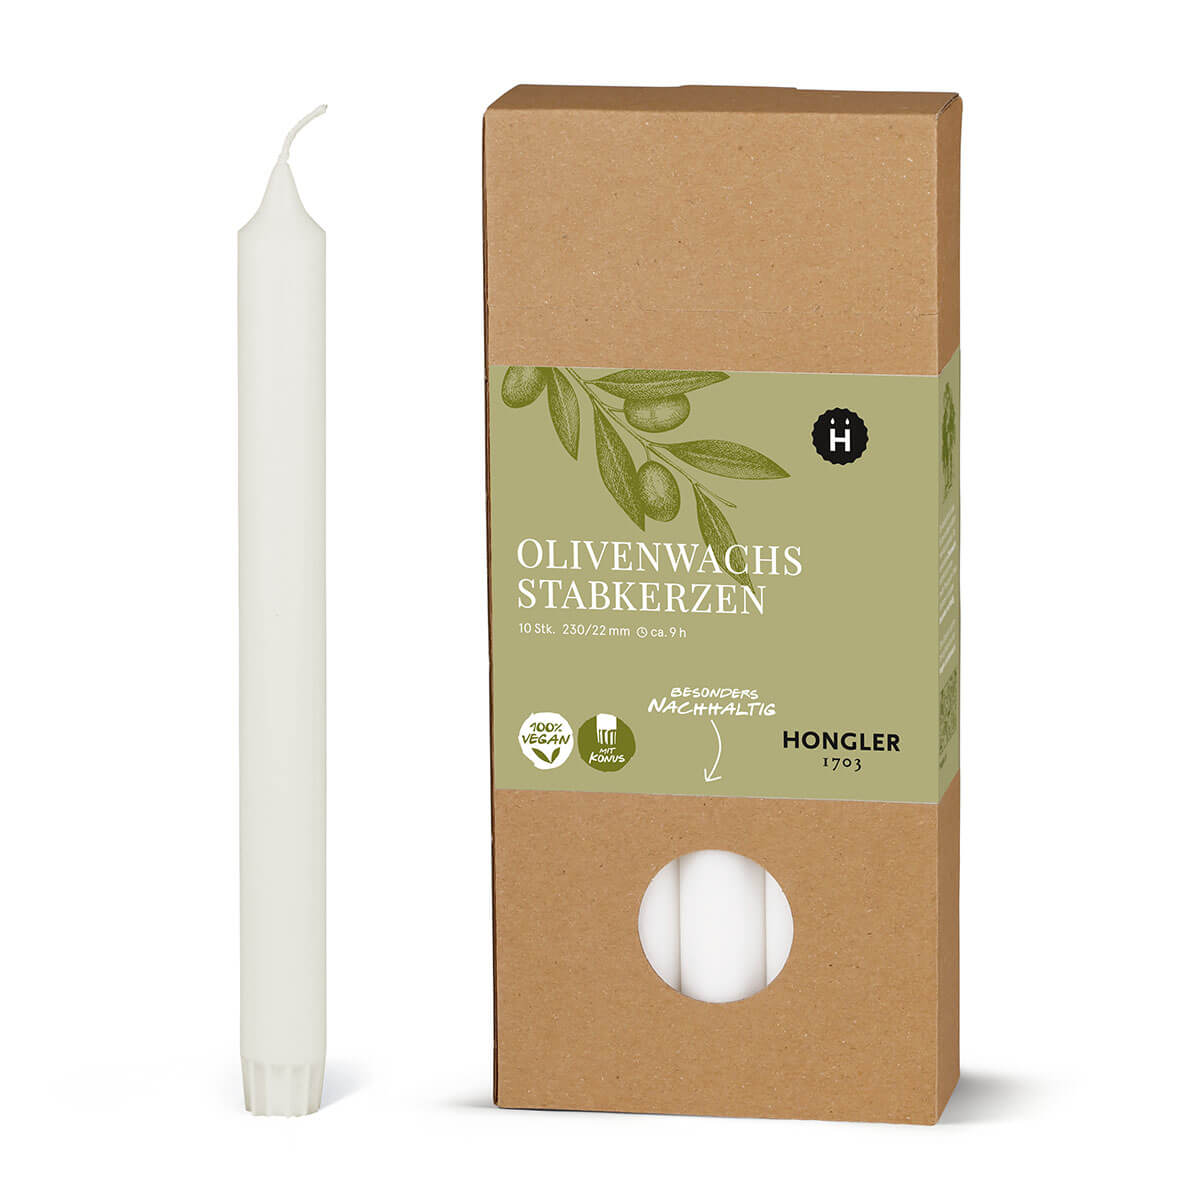 Stabkerzen aus Olivenwachs  – glatt – 230/22 mm – vegan